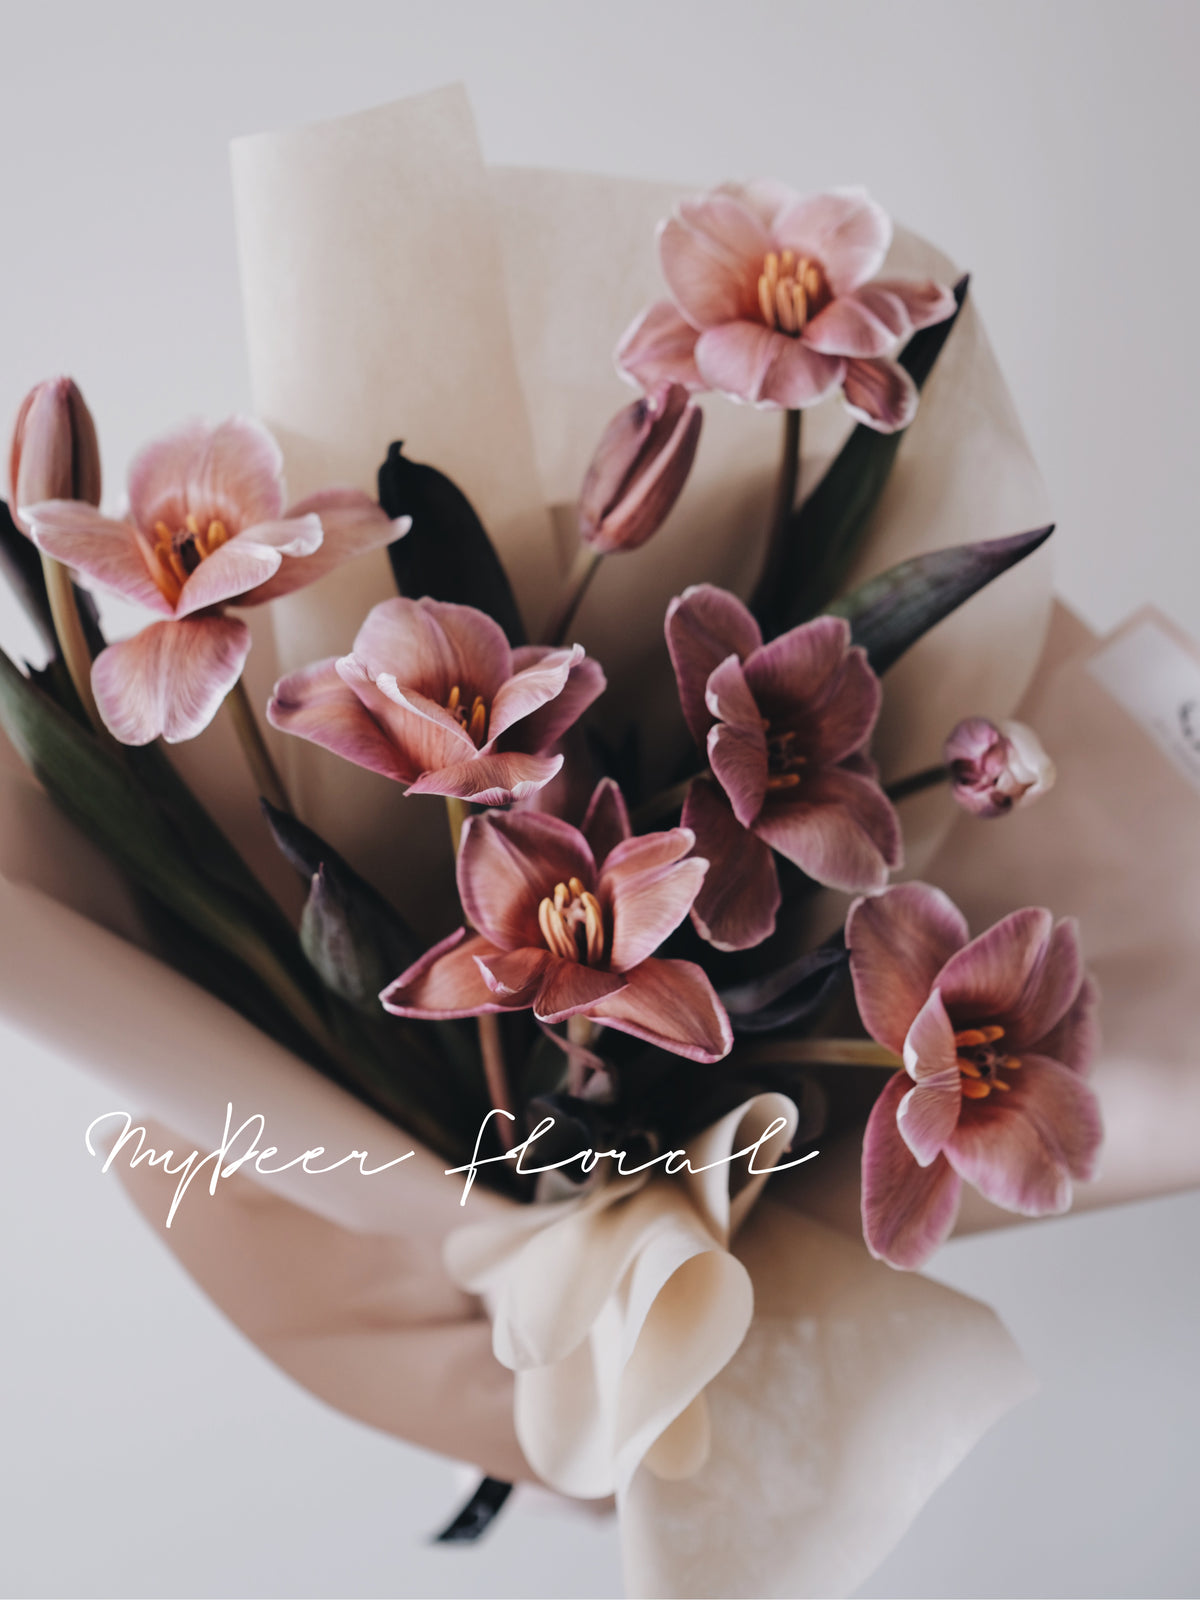 郁金香花束 | Tulips Bouquet